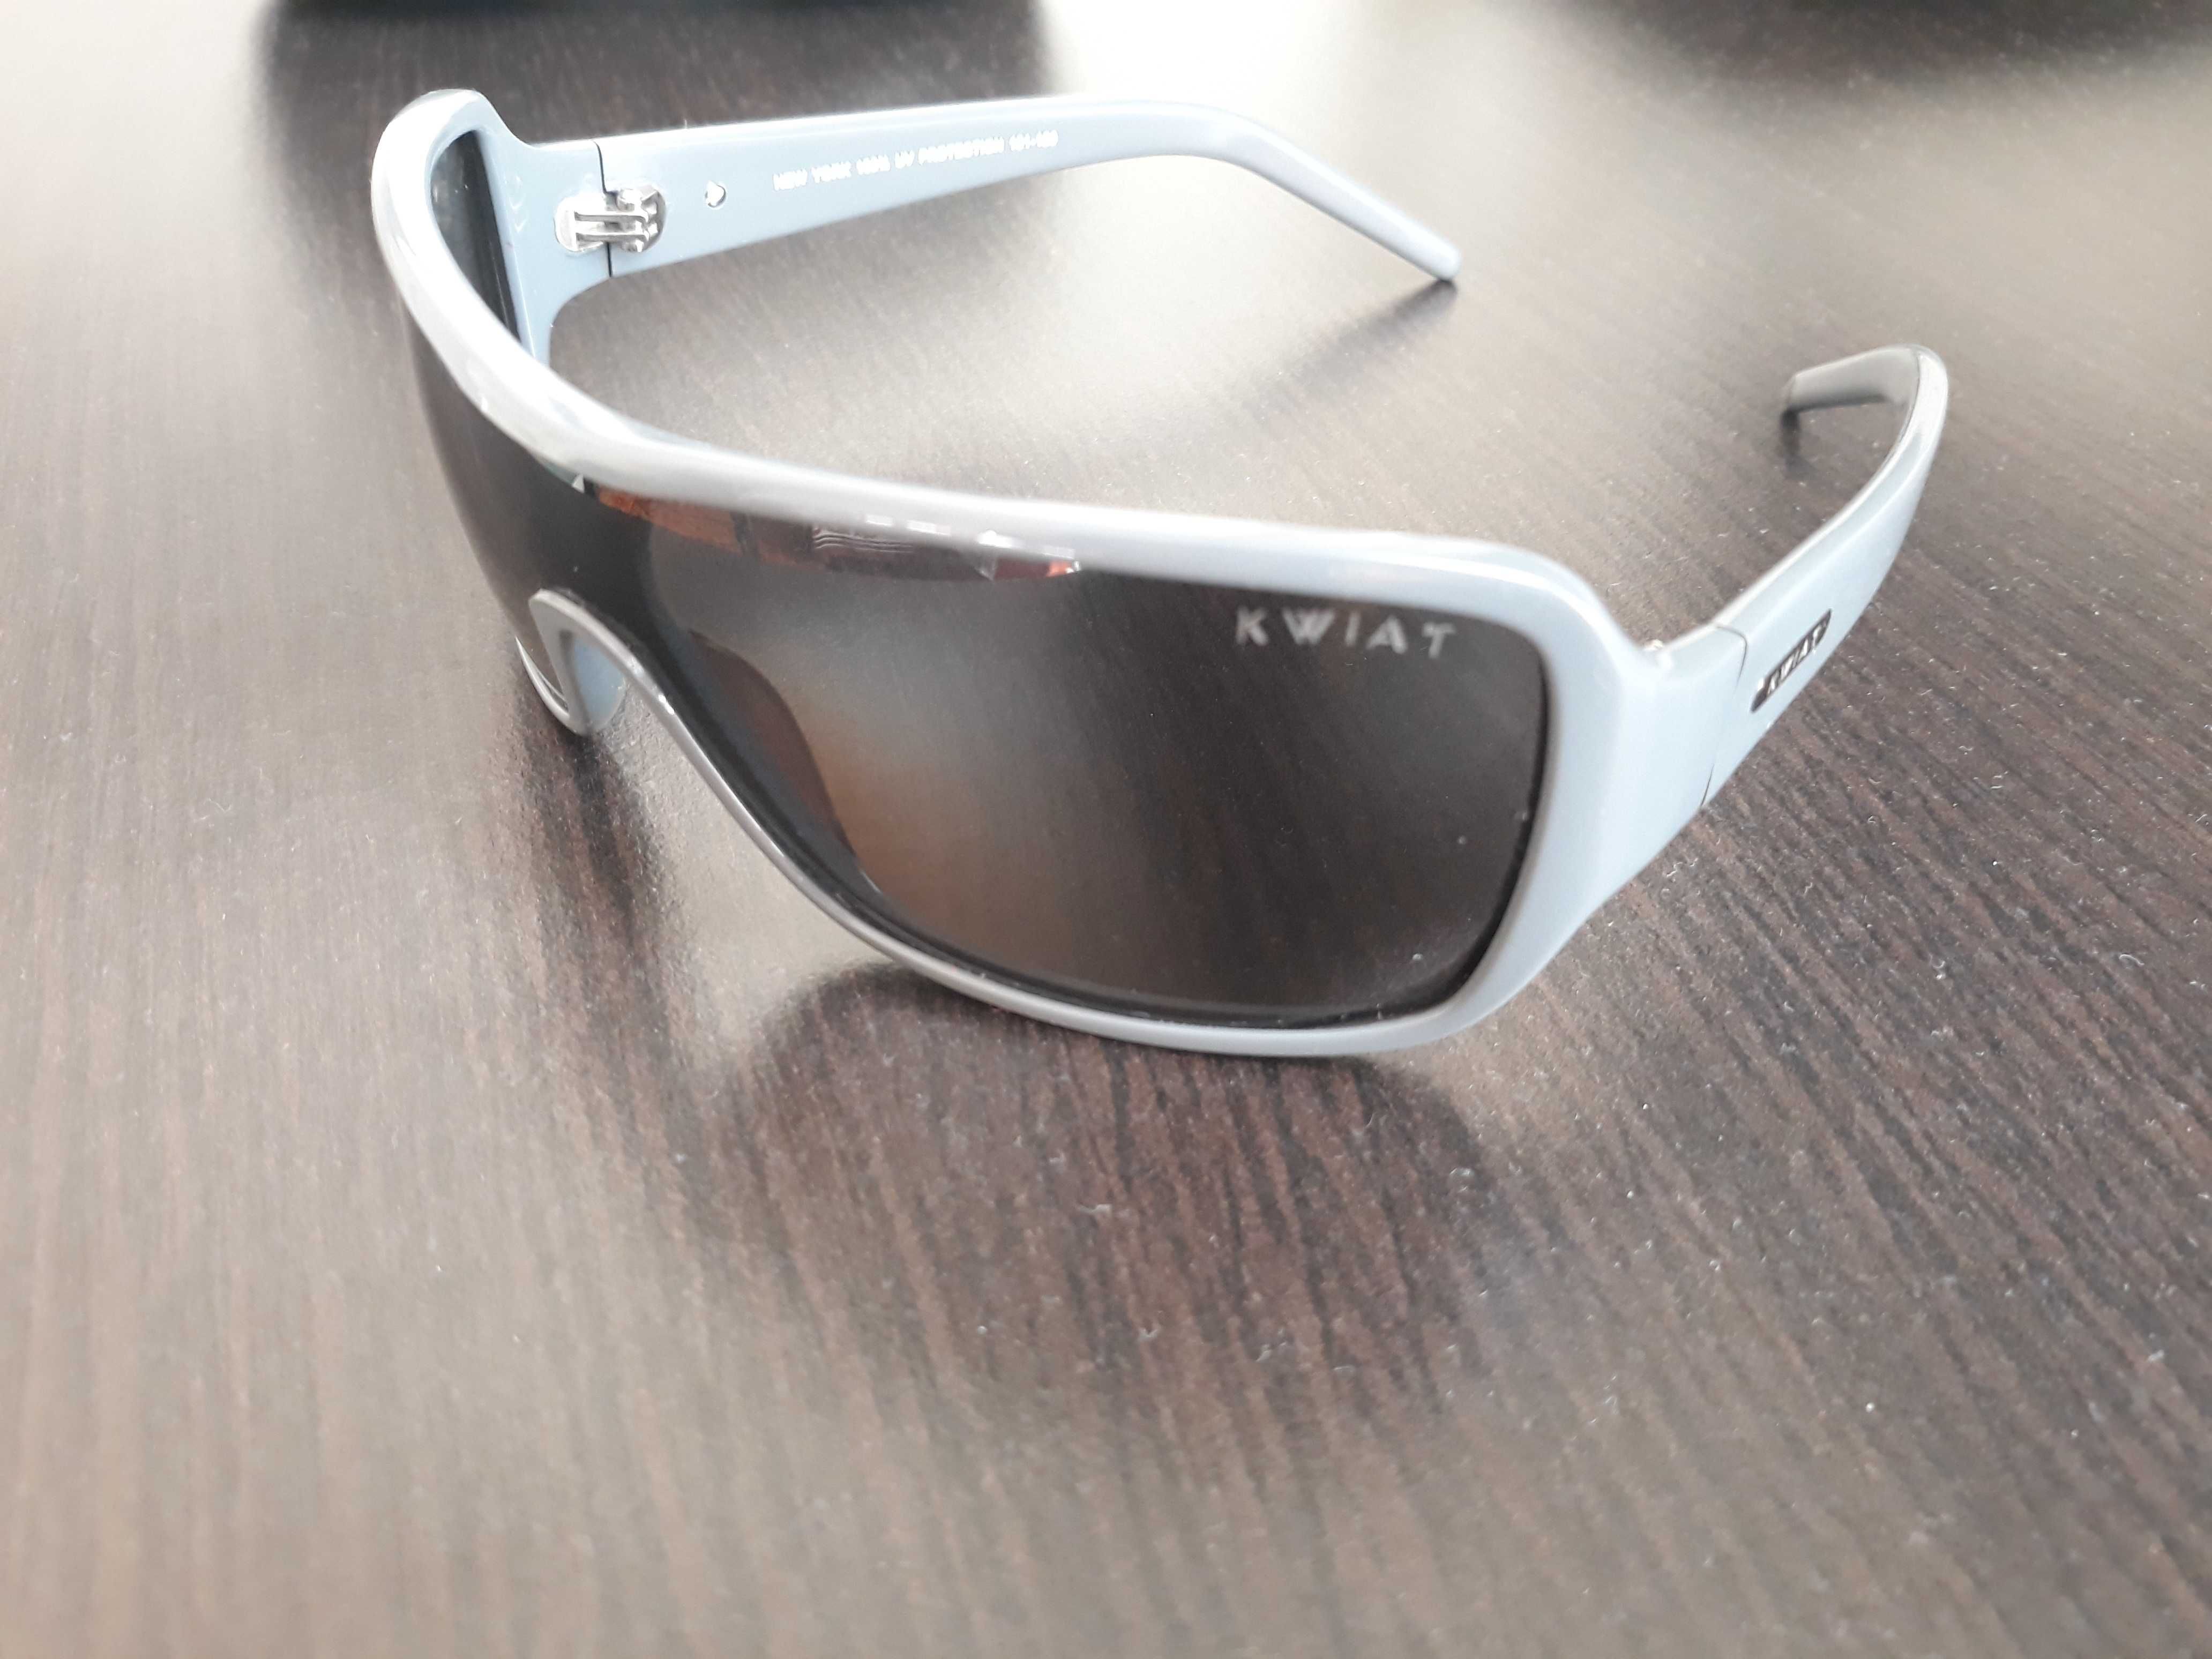 Слънчеви очила Кwiat USA KS 9077 polarized 100% UV protection